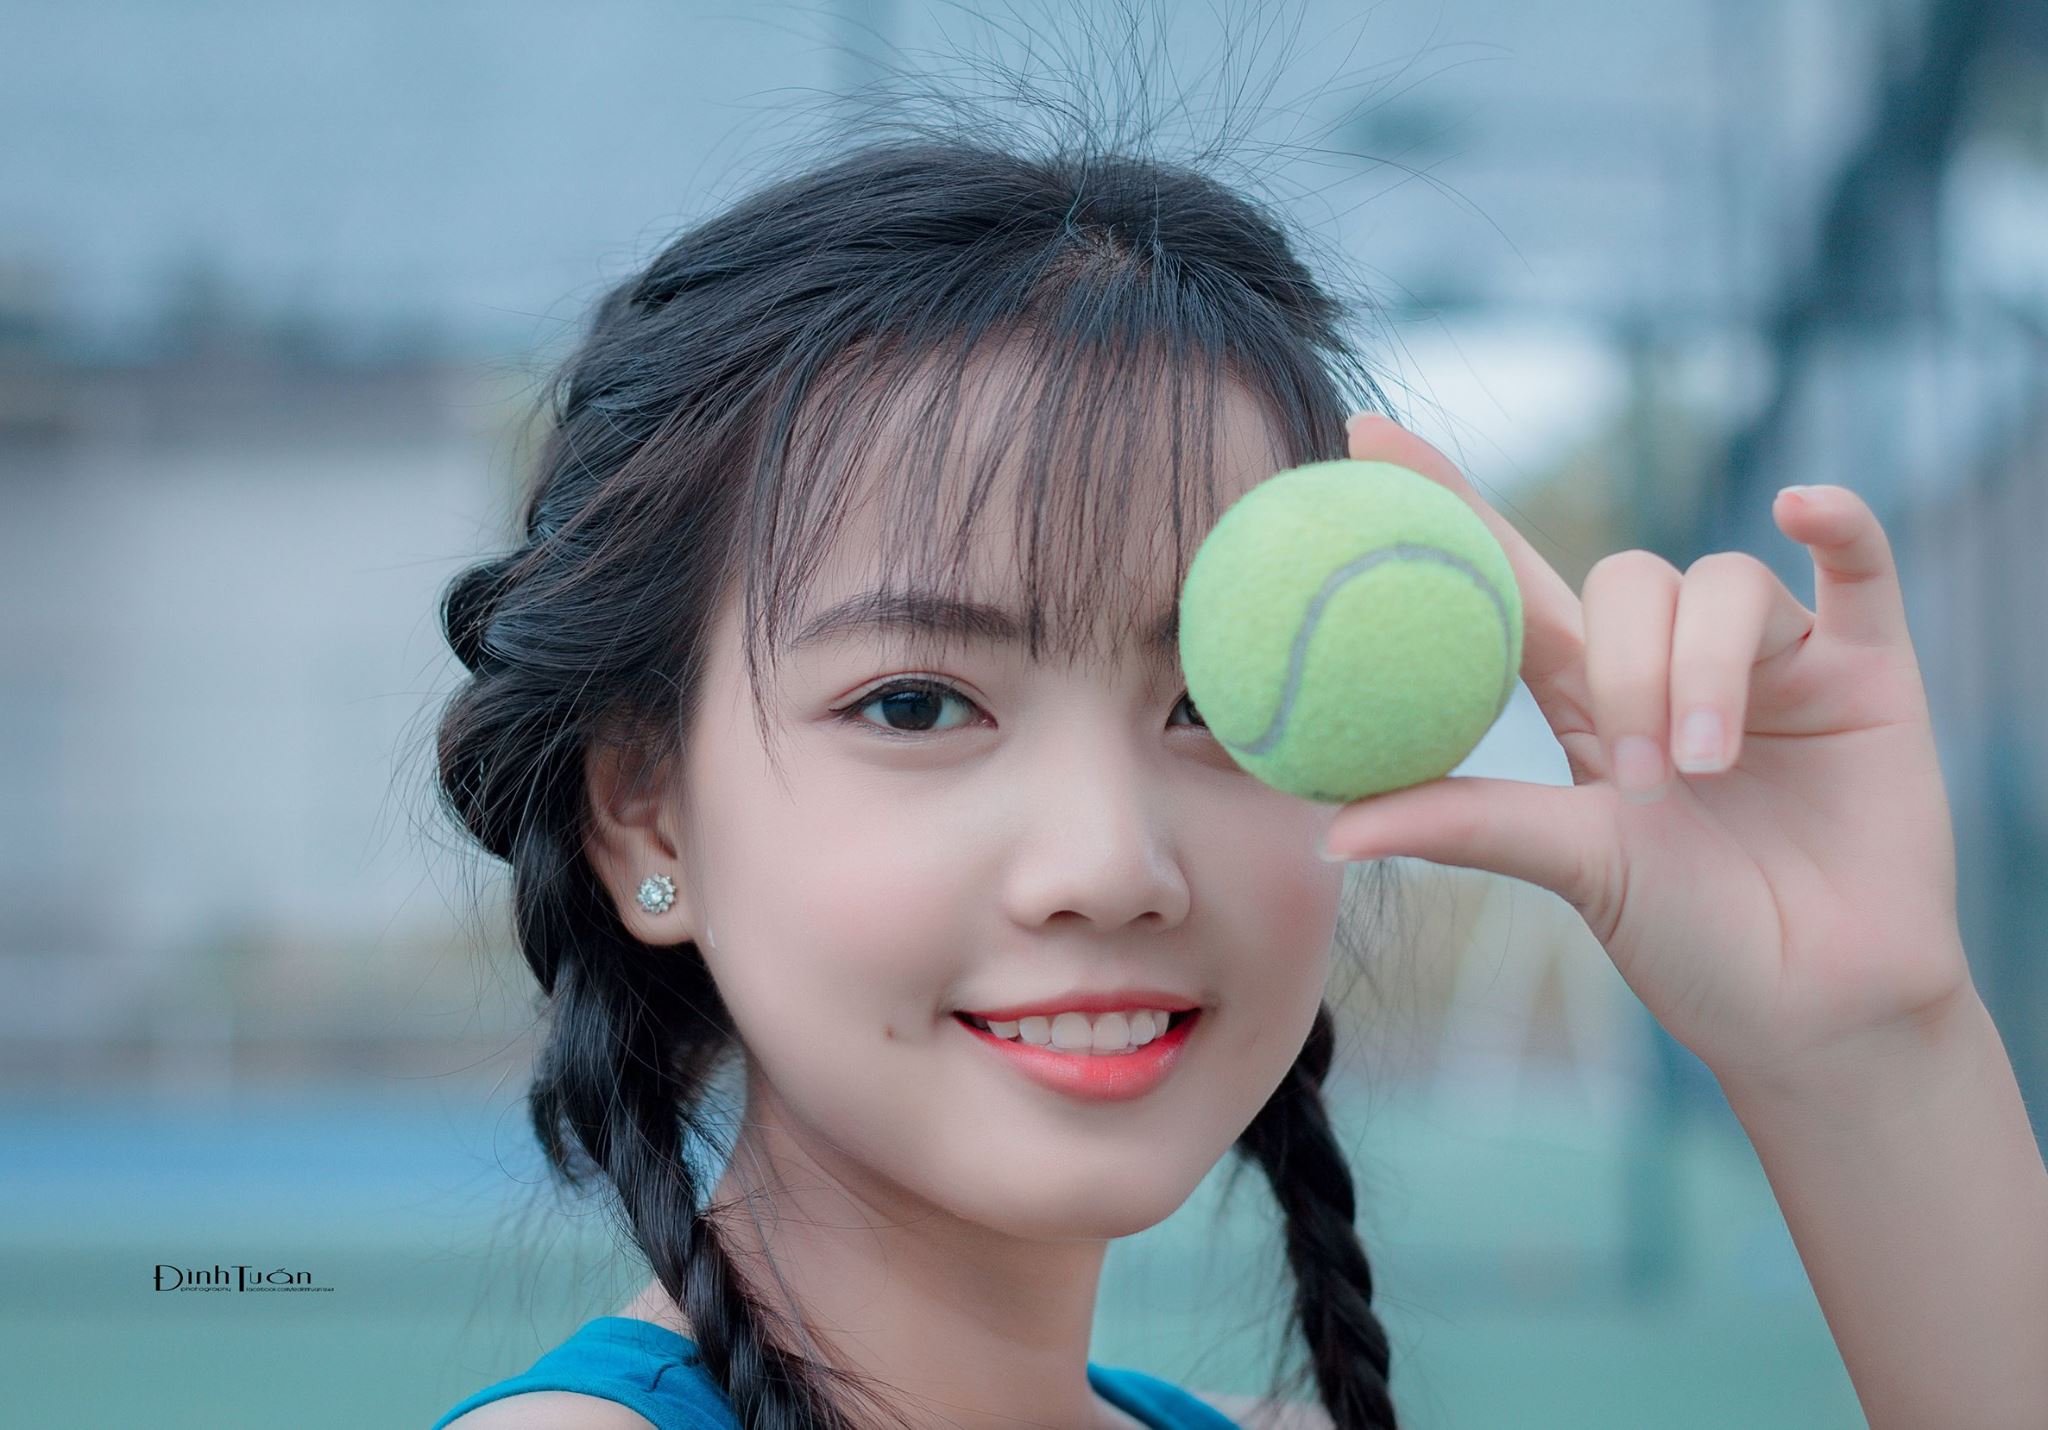 LDTPhotos | Le Dinh Tuan - @ledinhtuan Tennis-2-11 Trang chủ  